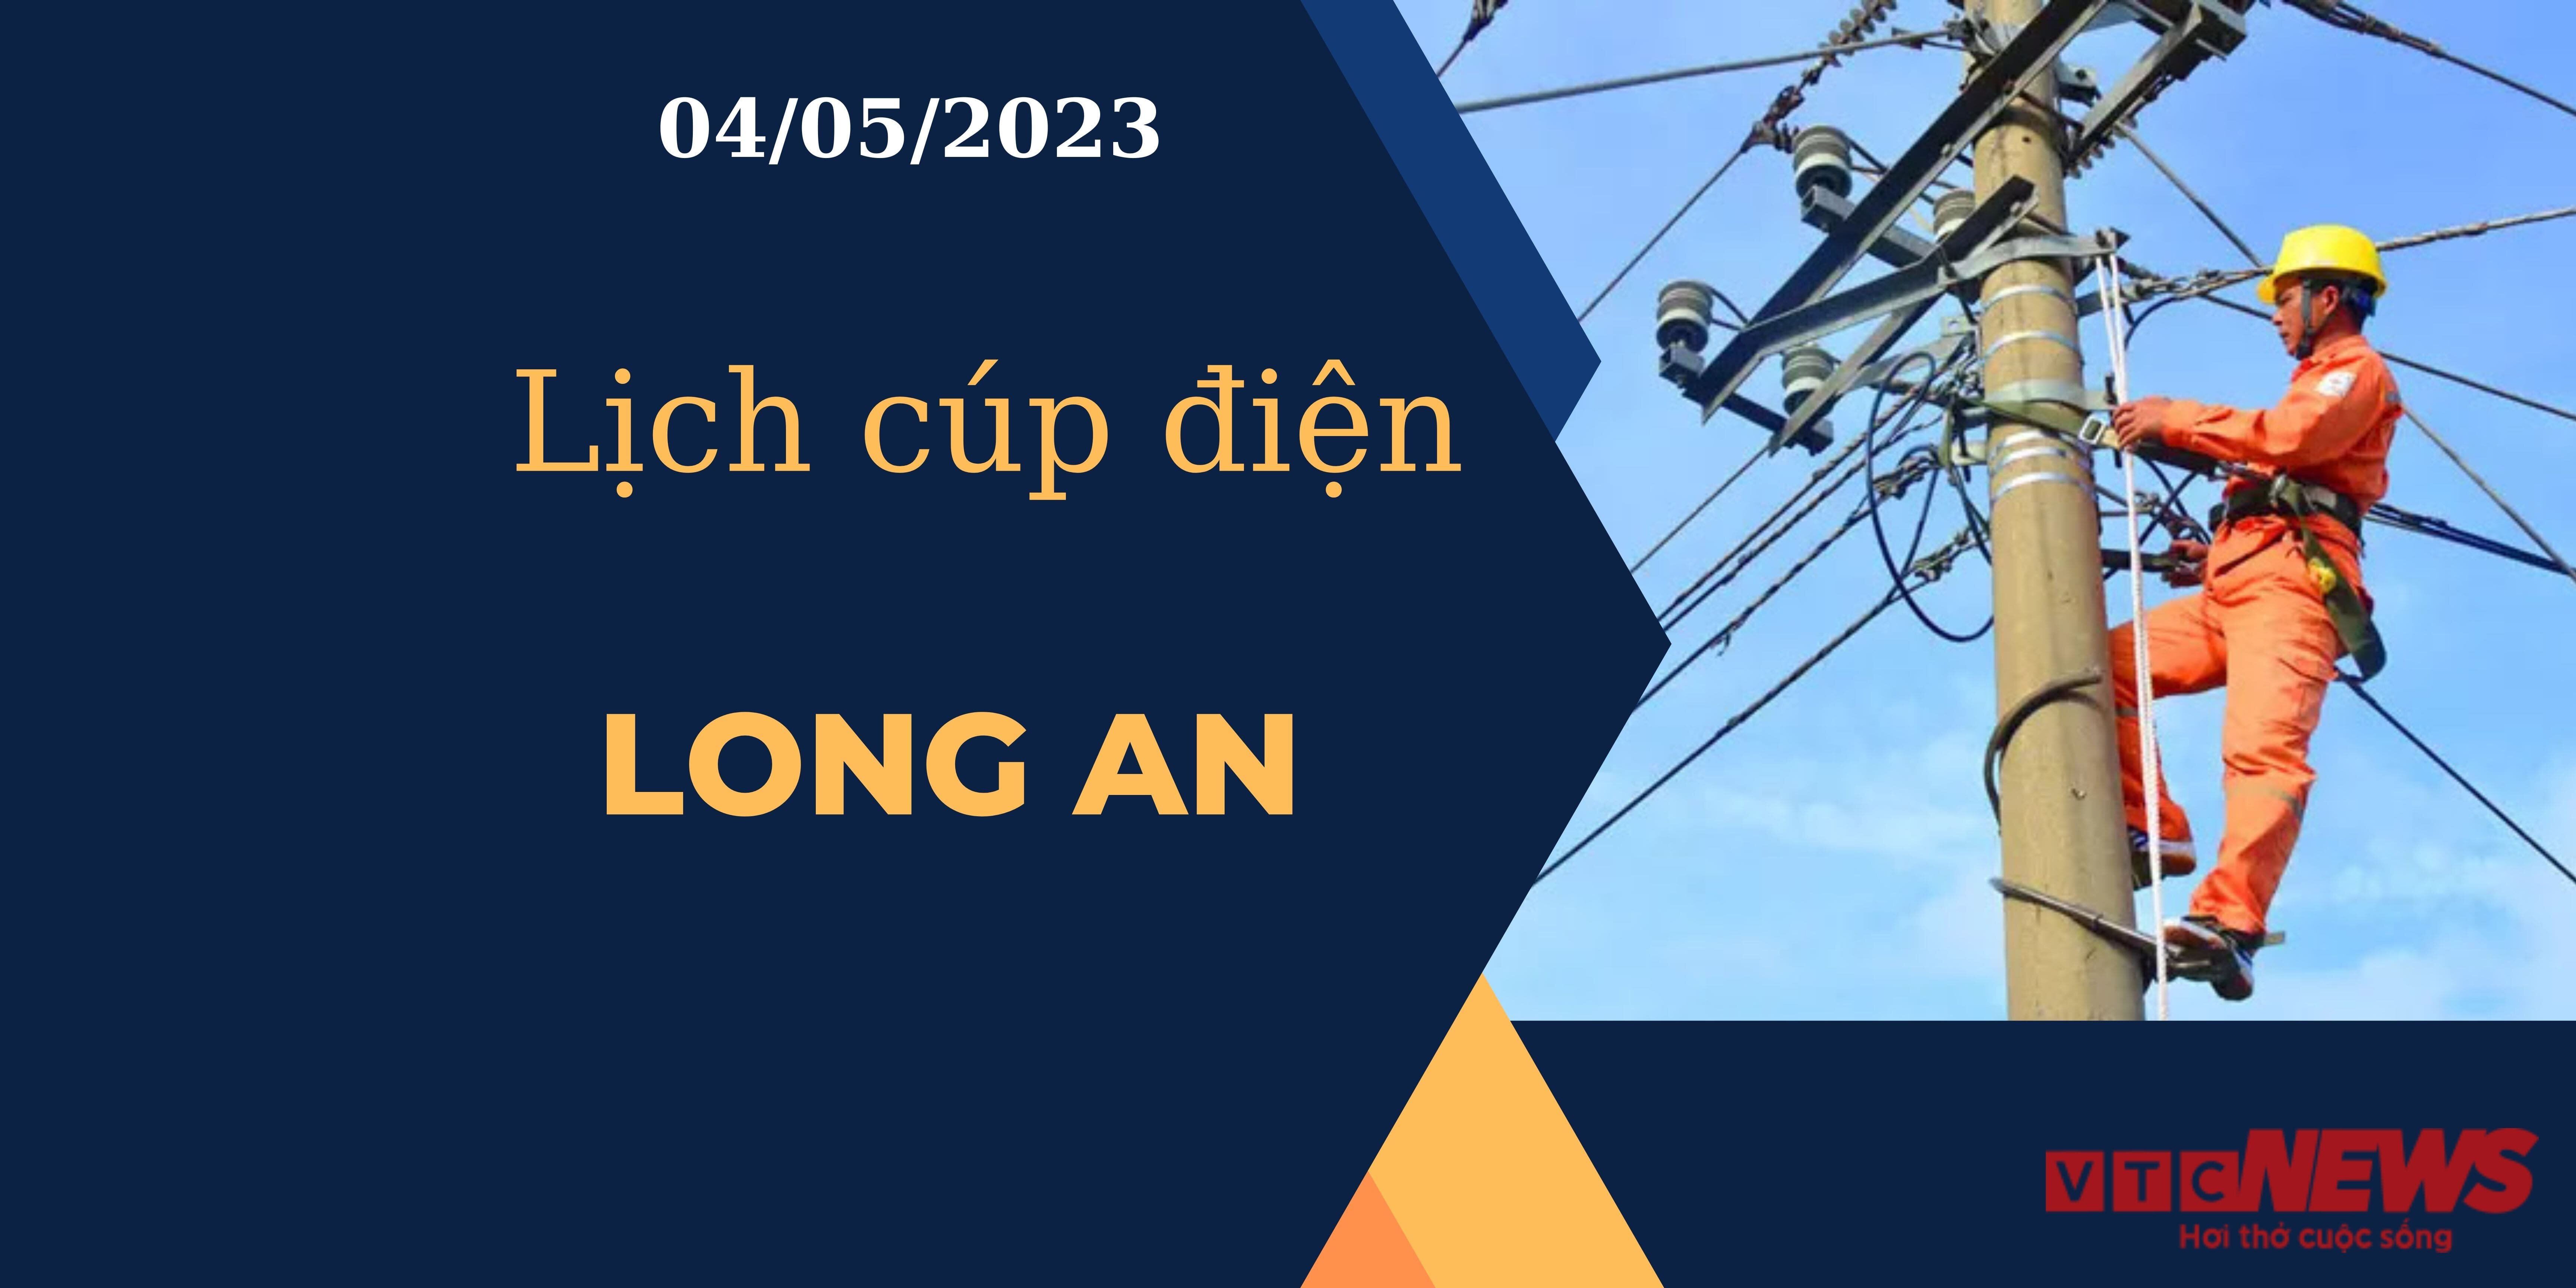 Lịch cúp điện hôm nay tại Long An ngày 04/05/2023 - 1